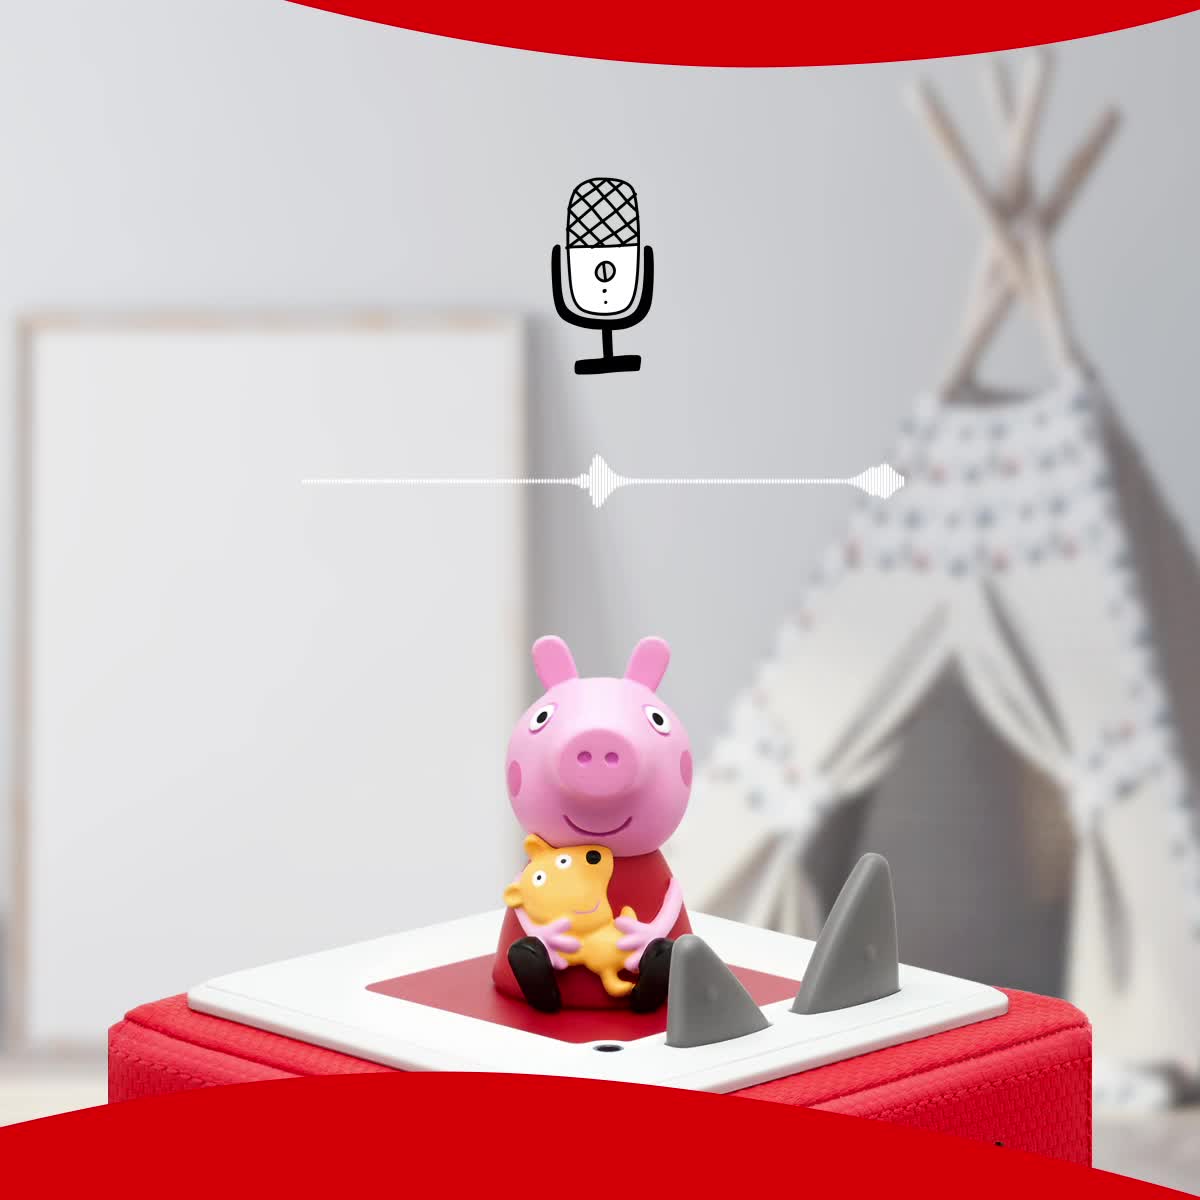 tonies Figurine Peppa Pig, Personnage avec Histoire Audio pour conteuse  Toniebox, audioconte 3 Ans et Plus - boîte à Histoires Vendue séparément